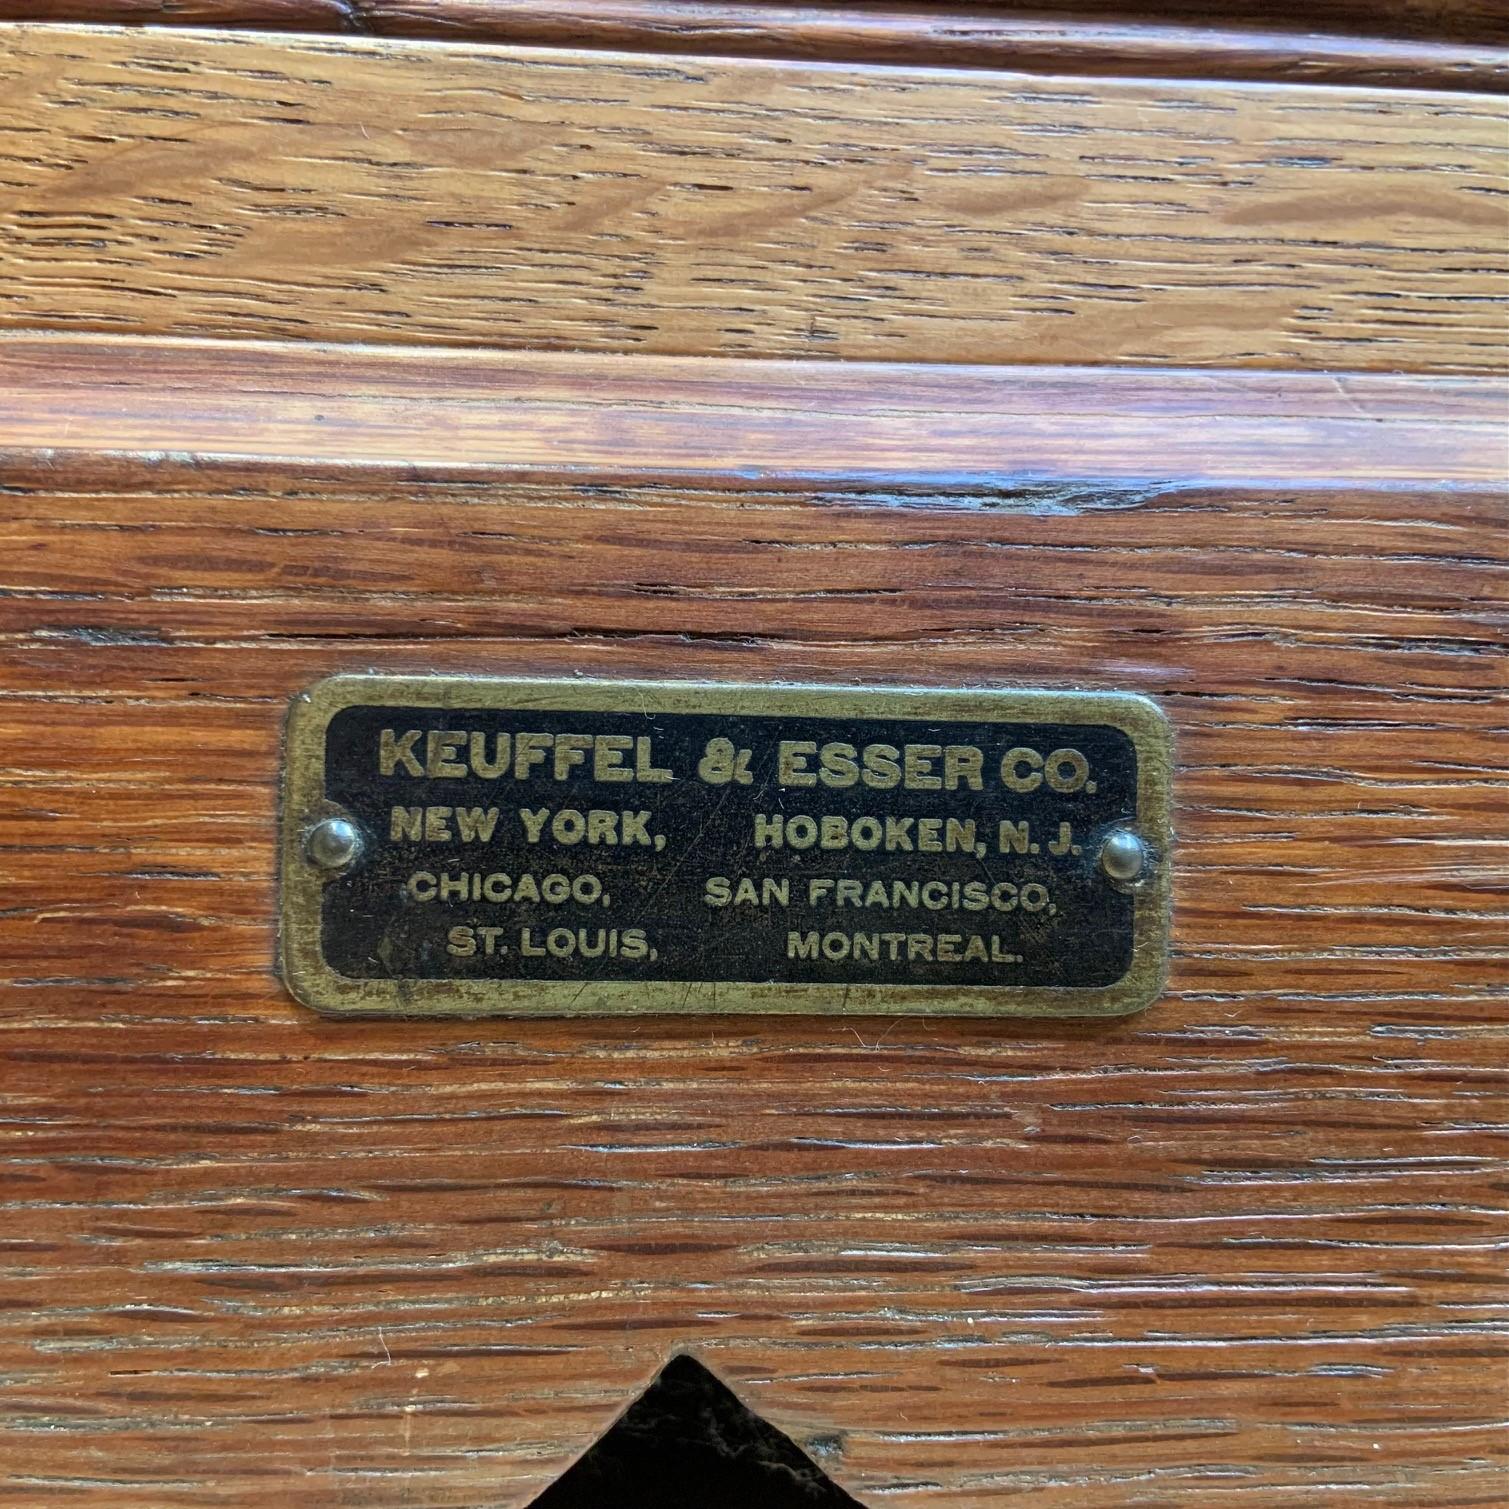 American Antique Oak Flat File Cabinet by Keuffel & Esser Co. America, circa 1910